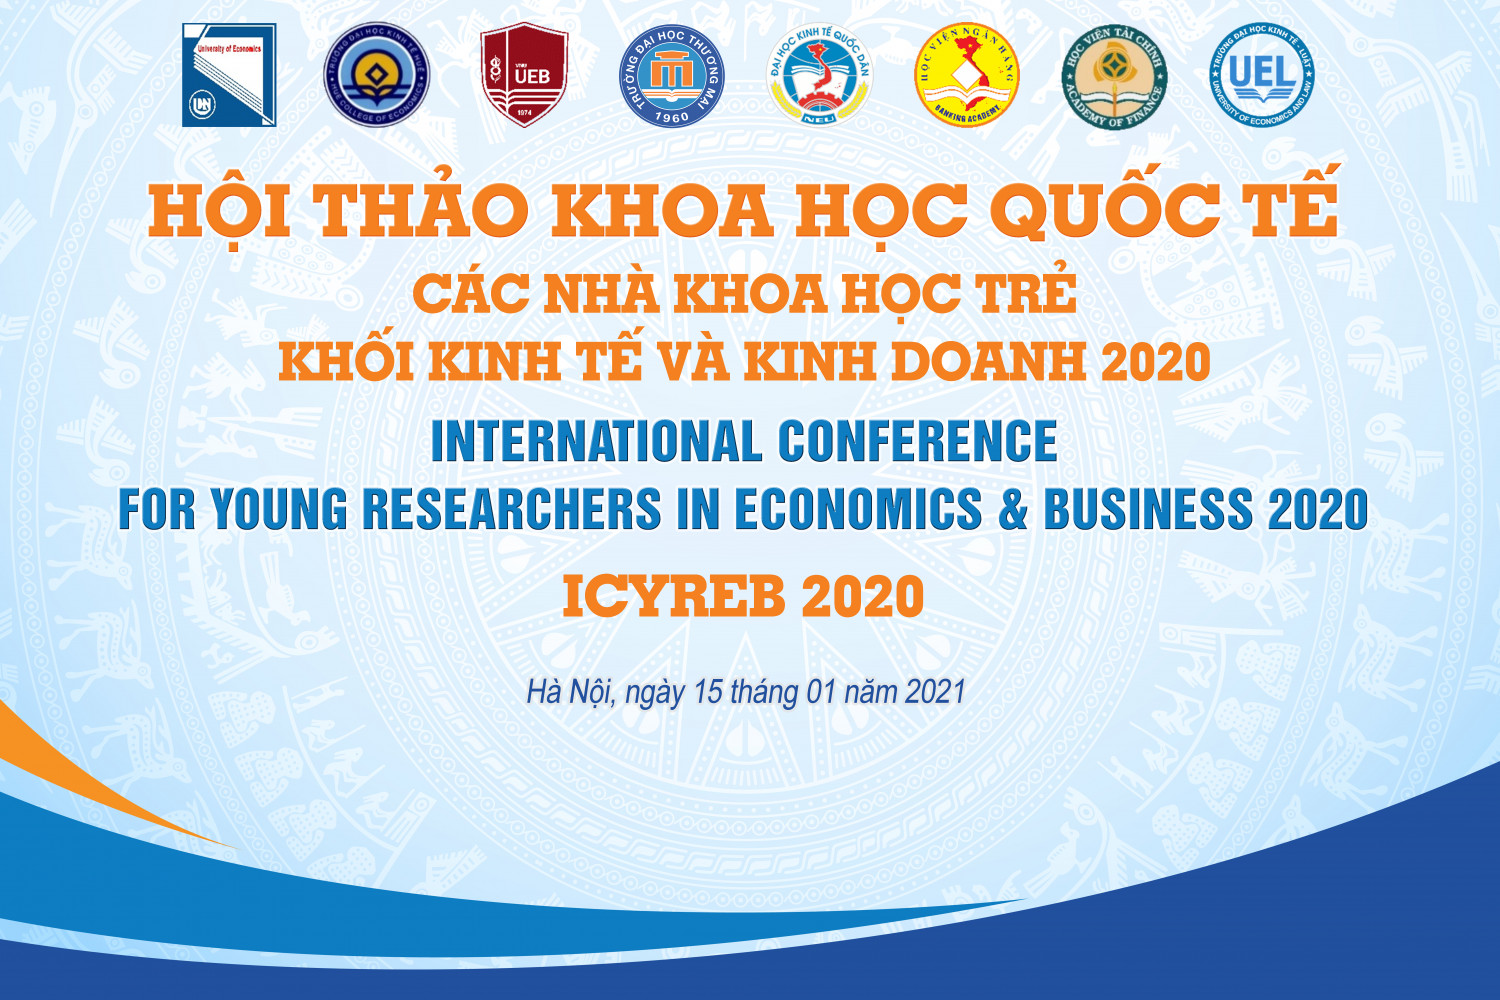 Hội thảo khoa học quốc tế: “Các nhà khoa học trẻ khối kinh tế và kinh doanh 2020 – ICYREB 2020”